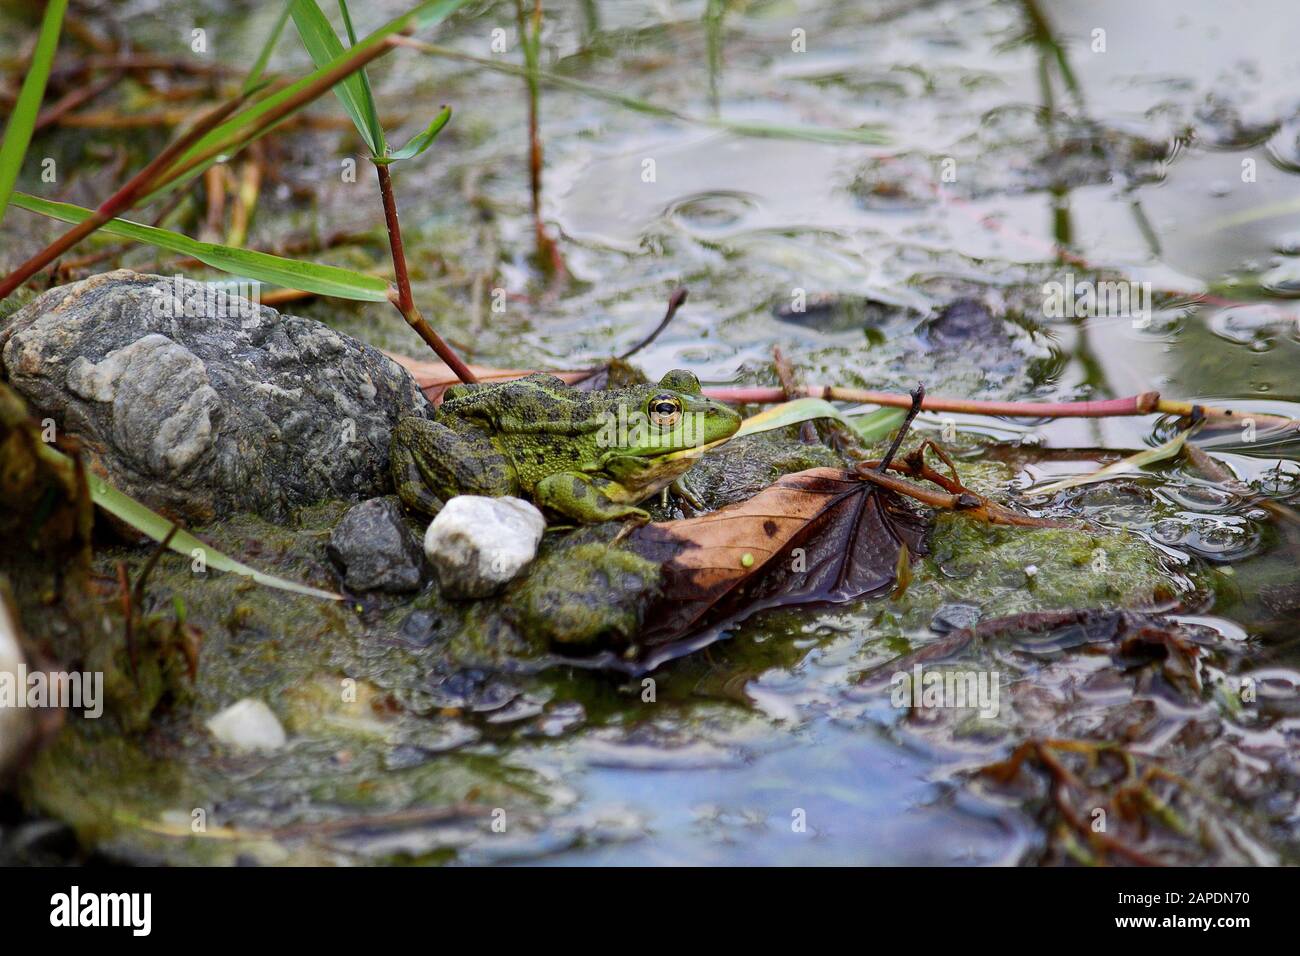 Une grenouille verte, également connu sous le nom de l'eau courante ou grenouille grenouille comestible dans un étang avec quelques feuilles Banque D'Images